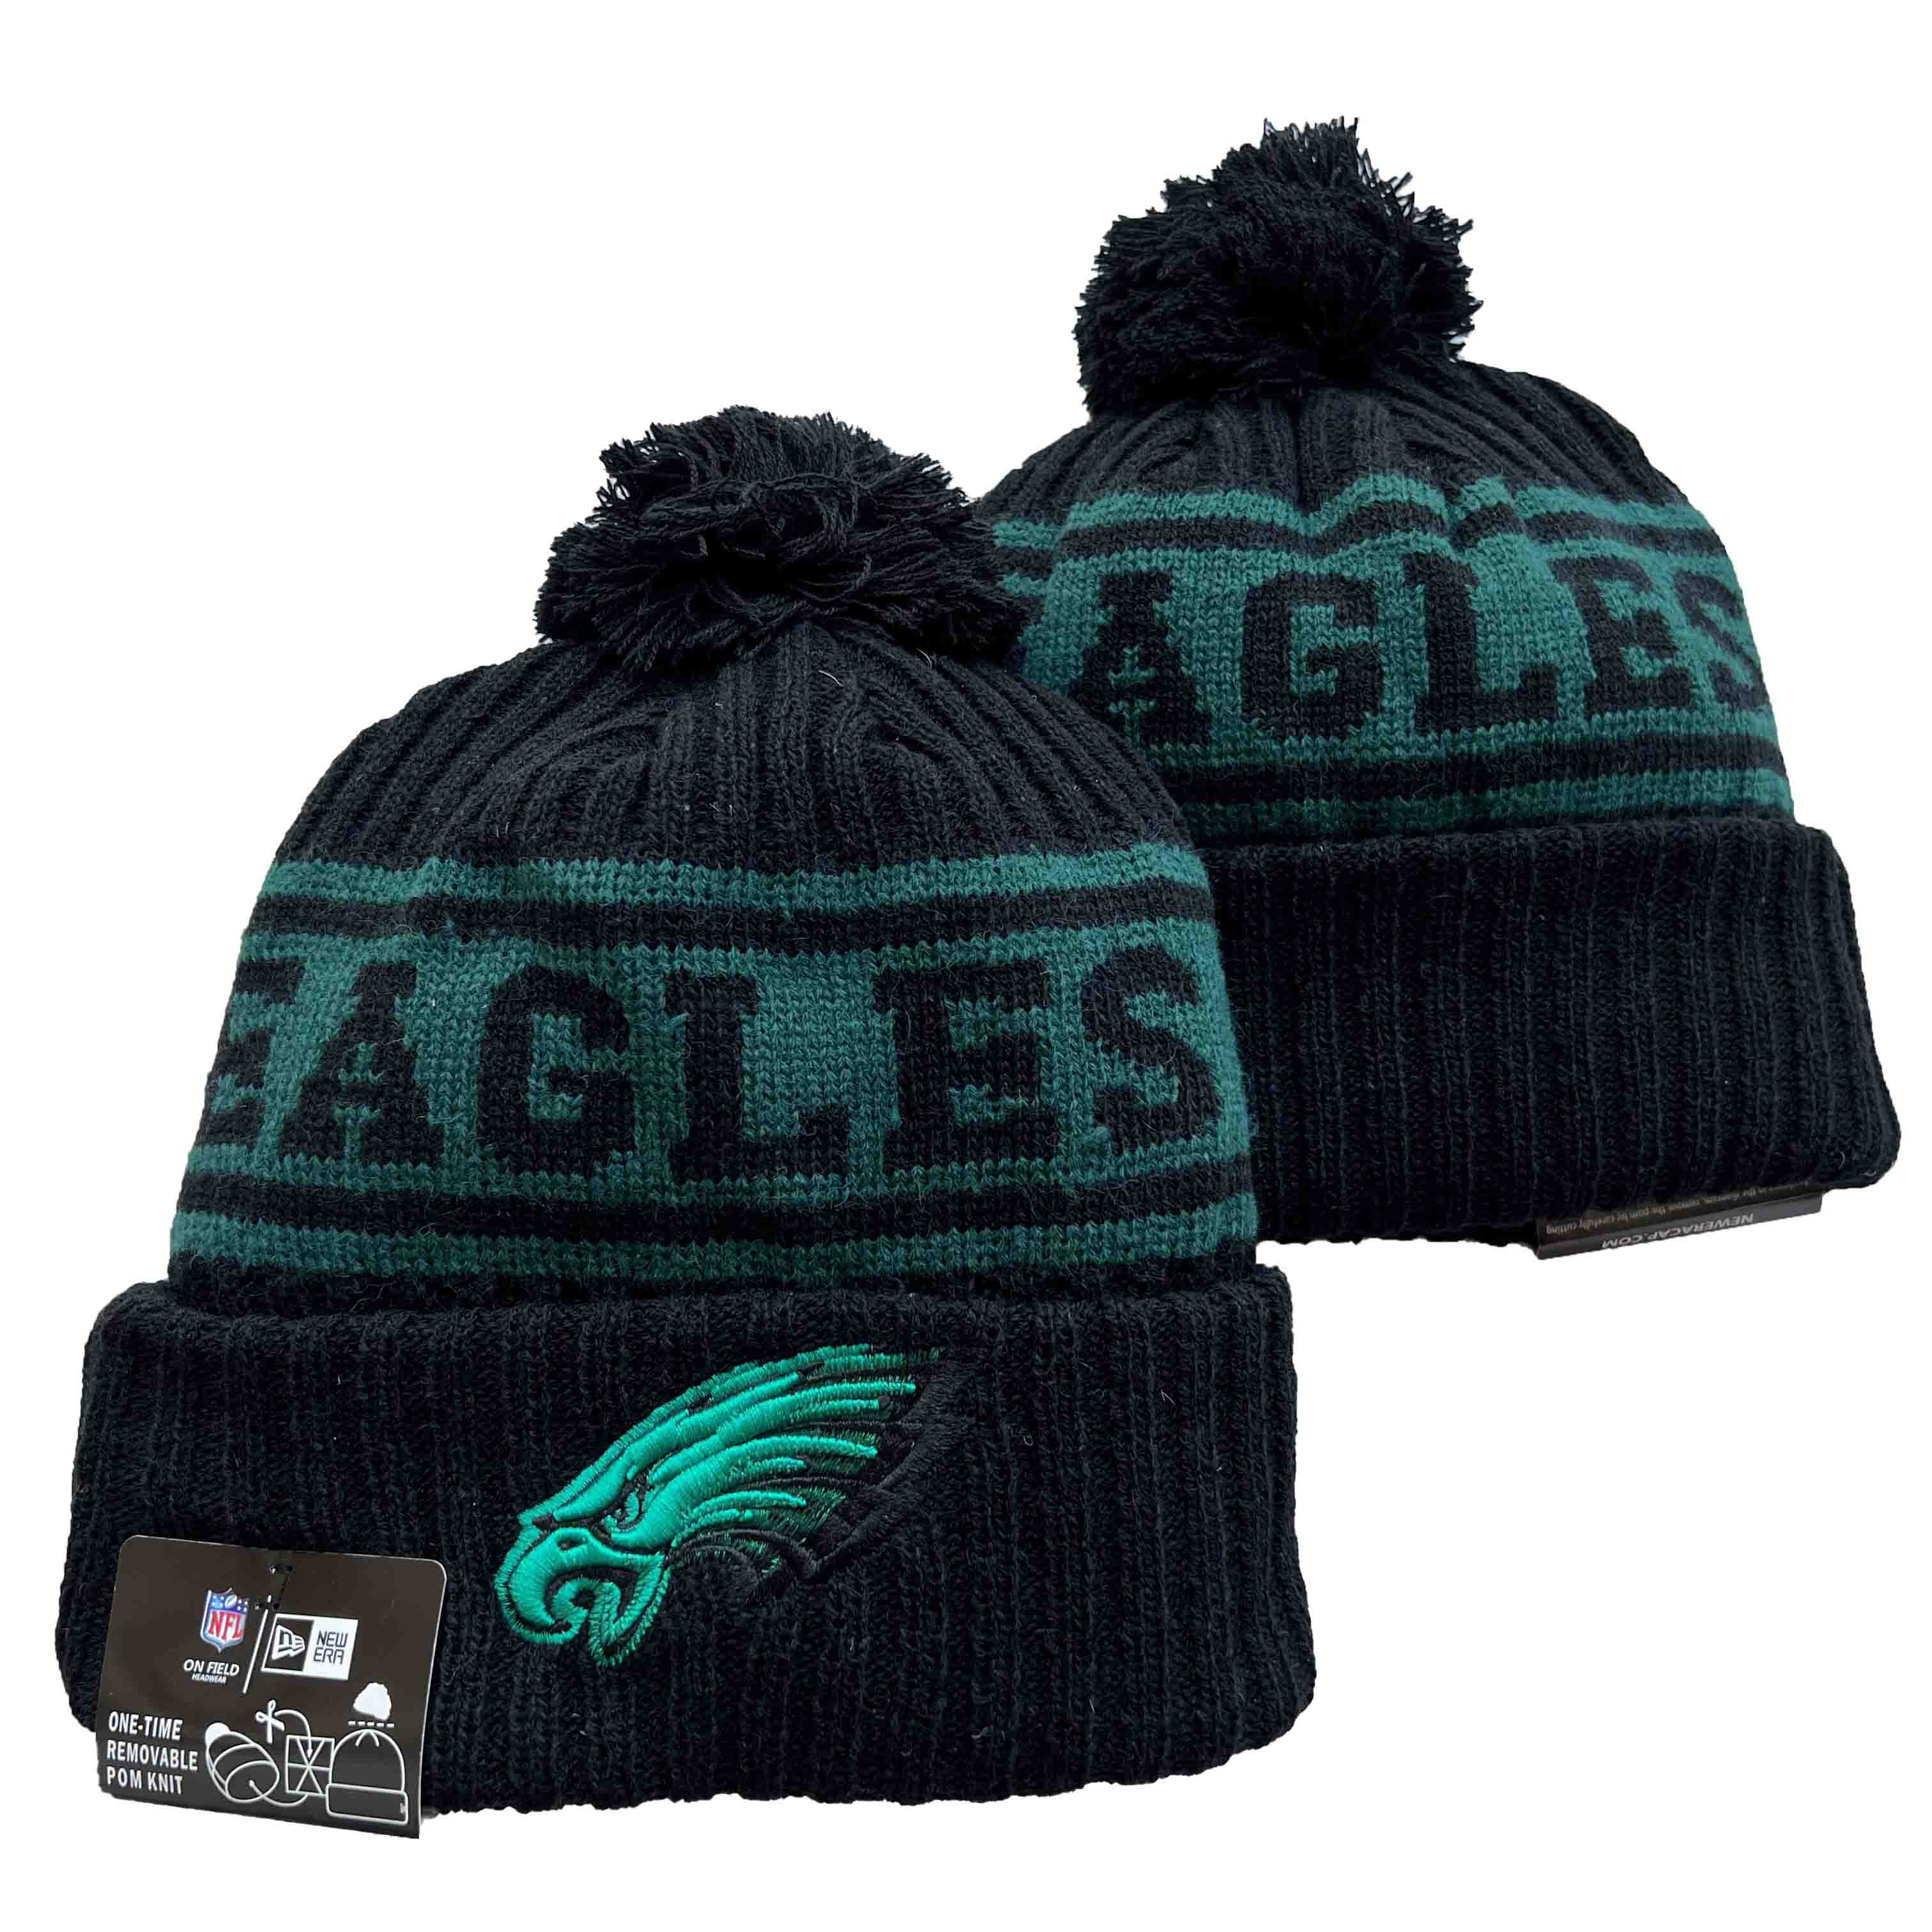 Philadelphia Eagles Cuffed Pom Knit Hat Black Green YD221202 (2)